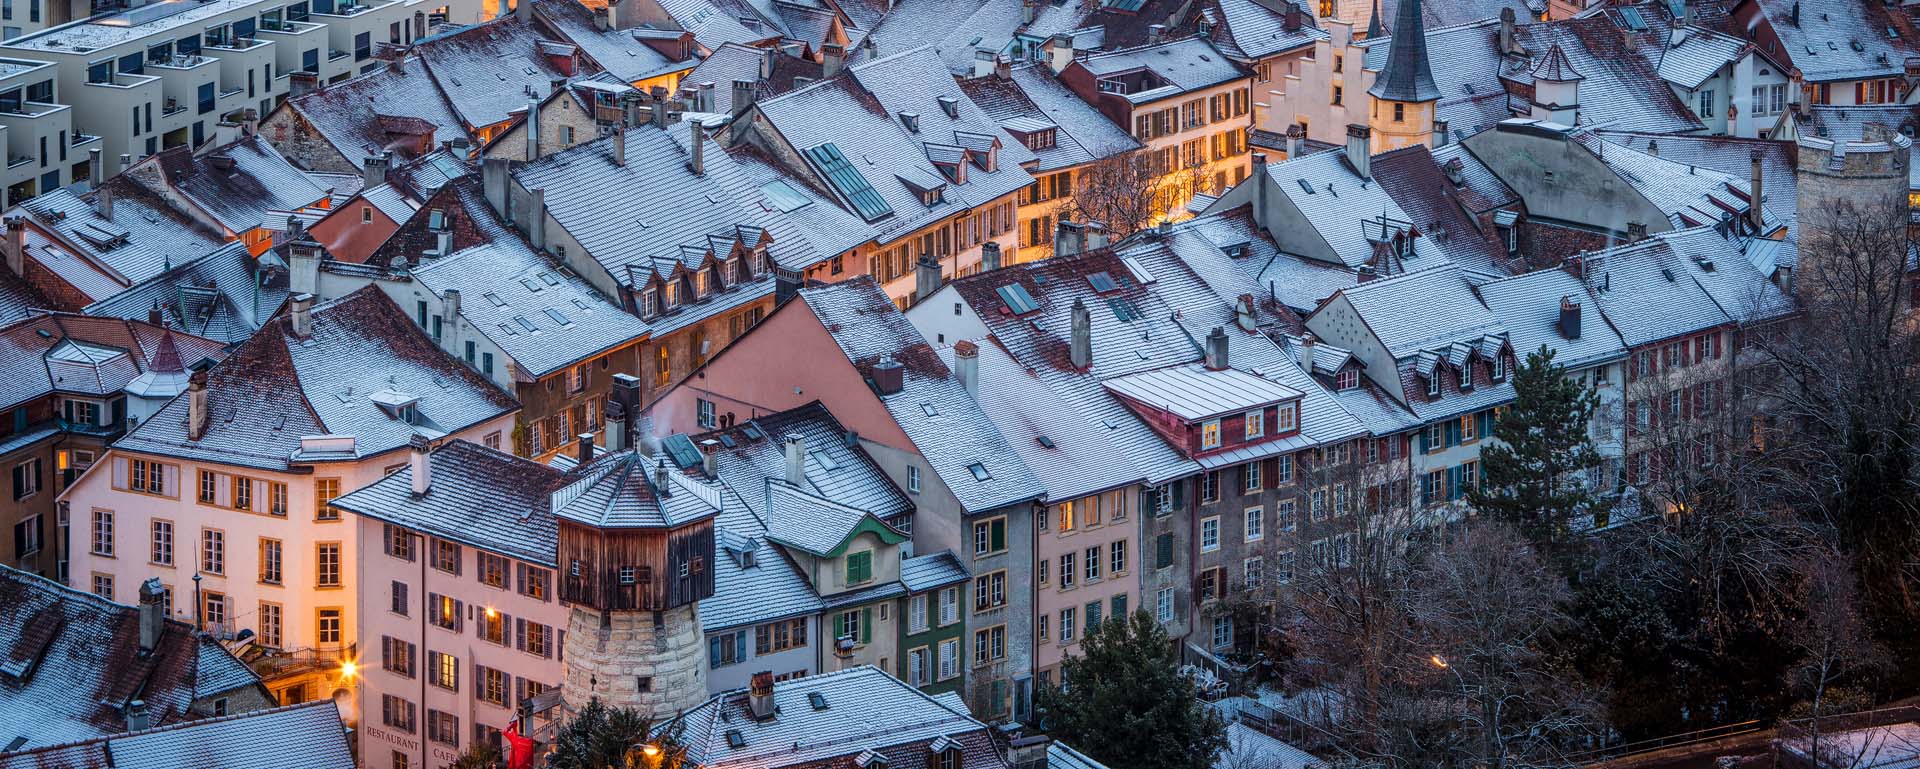 Bieler Altstadt im Winter